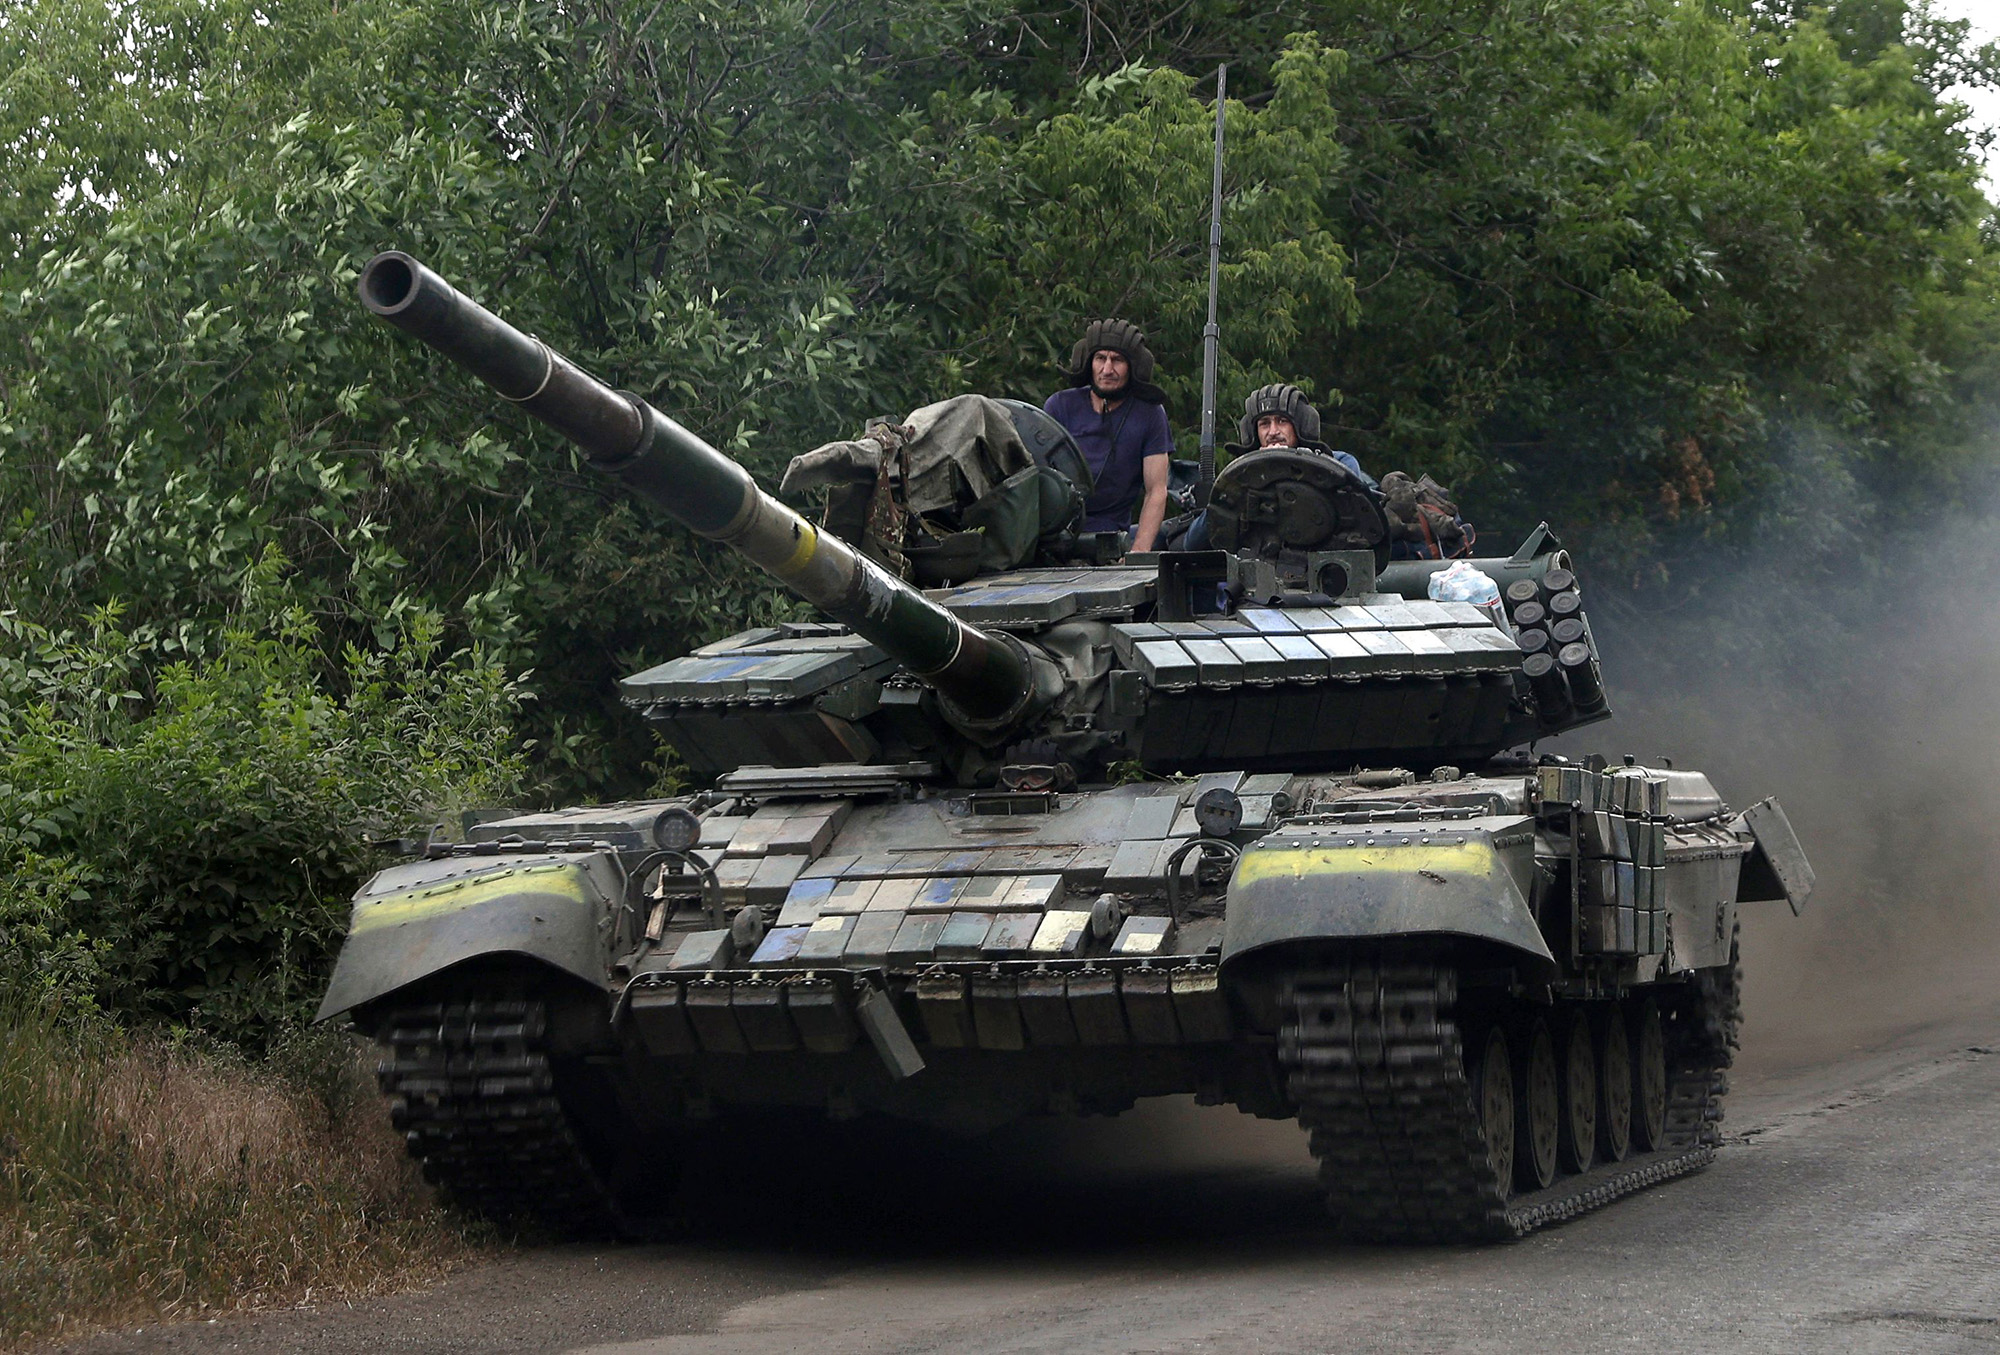 Ukrainian soldiers ride a tank on a road in the eastern Luhansk region, Ukraine, on June 23.